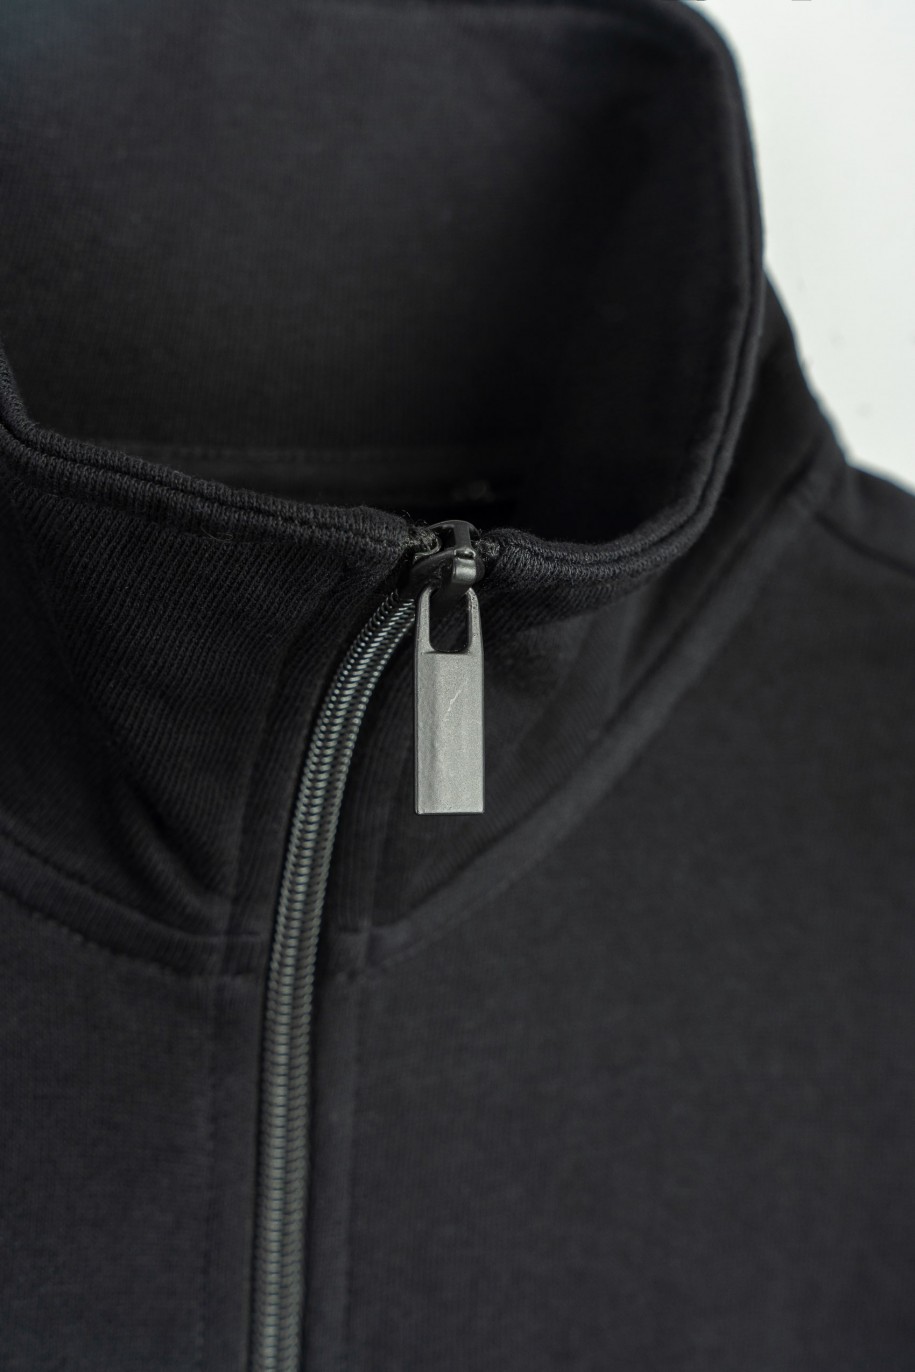 Czarna bluza bomberka z minimalistycznymi nadrukami zapiana na zamek - 47471